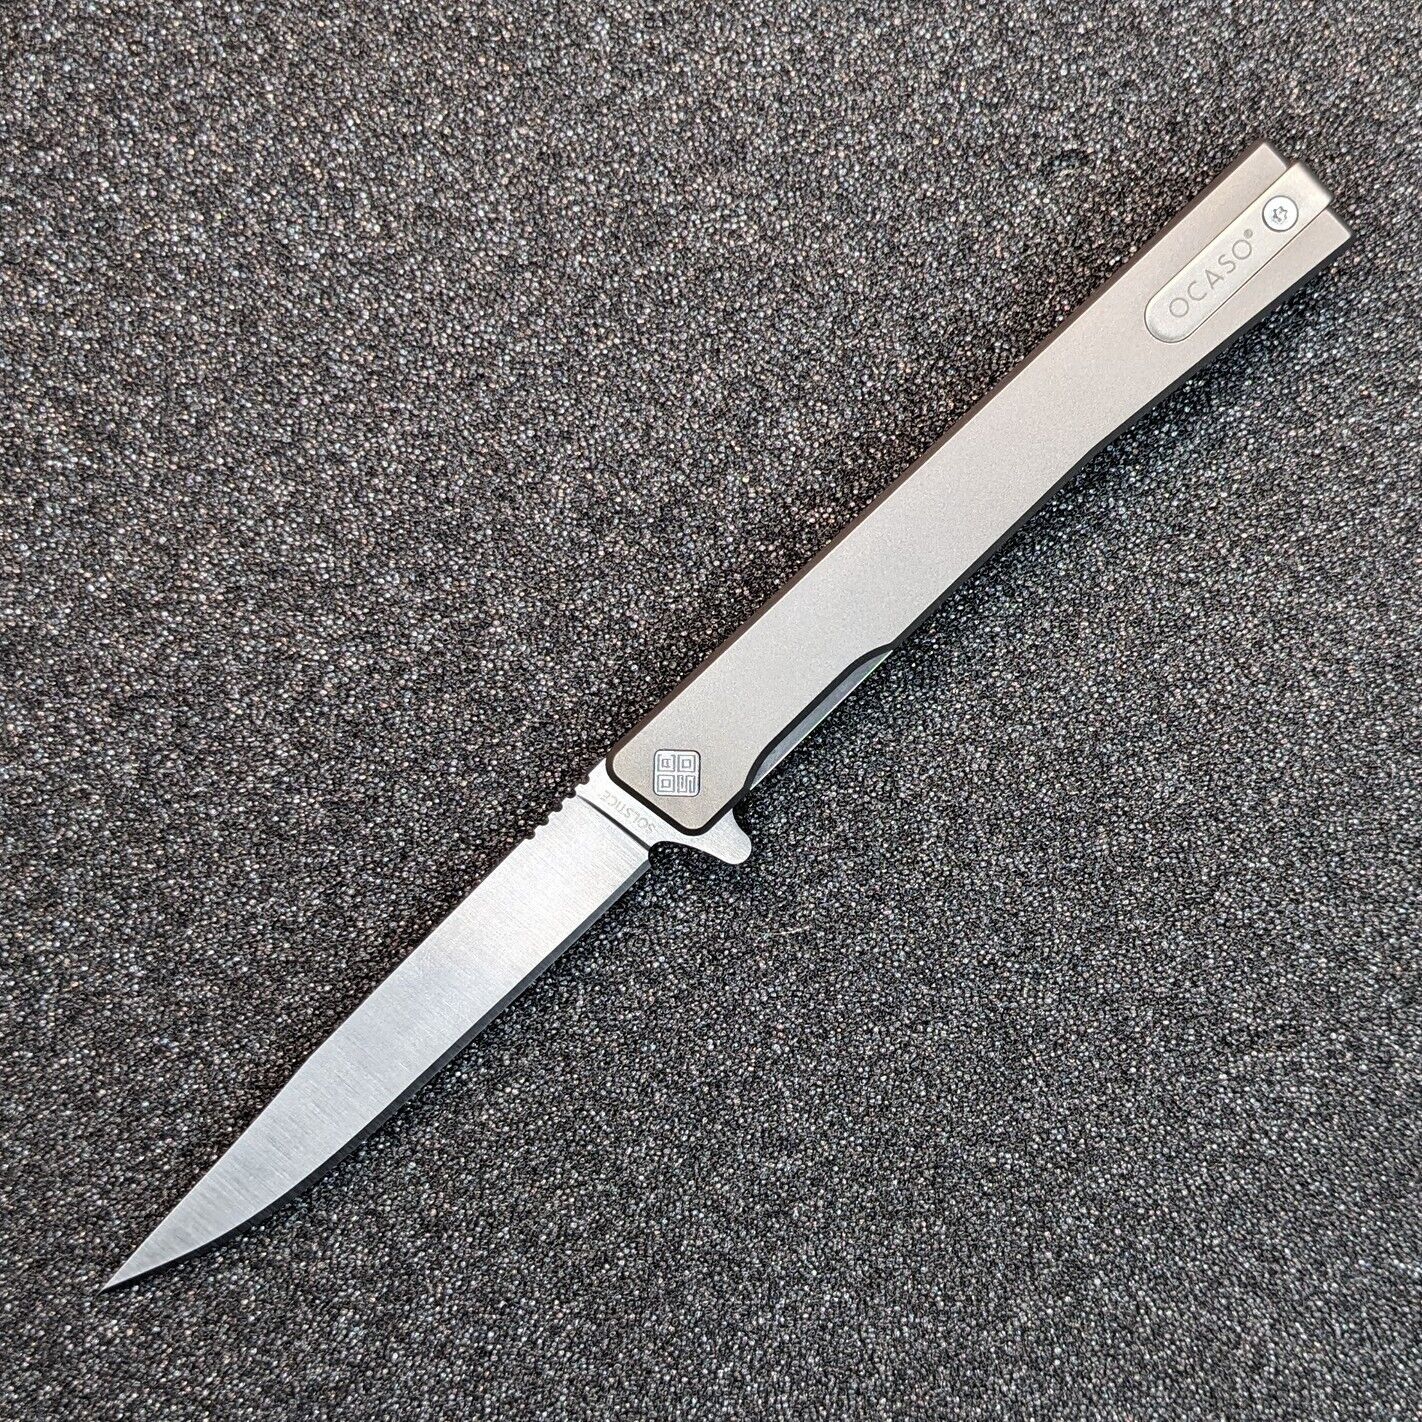 Ocaso Solstice Titanium Flipper Liner-lock Knife S35VN Blade OCA10CTS